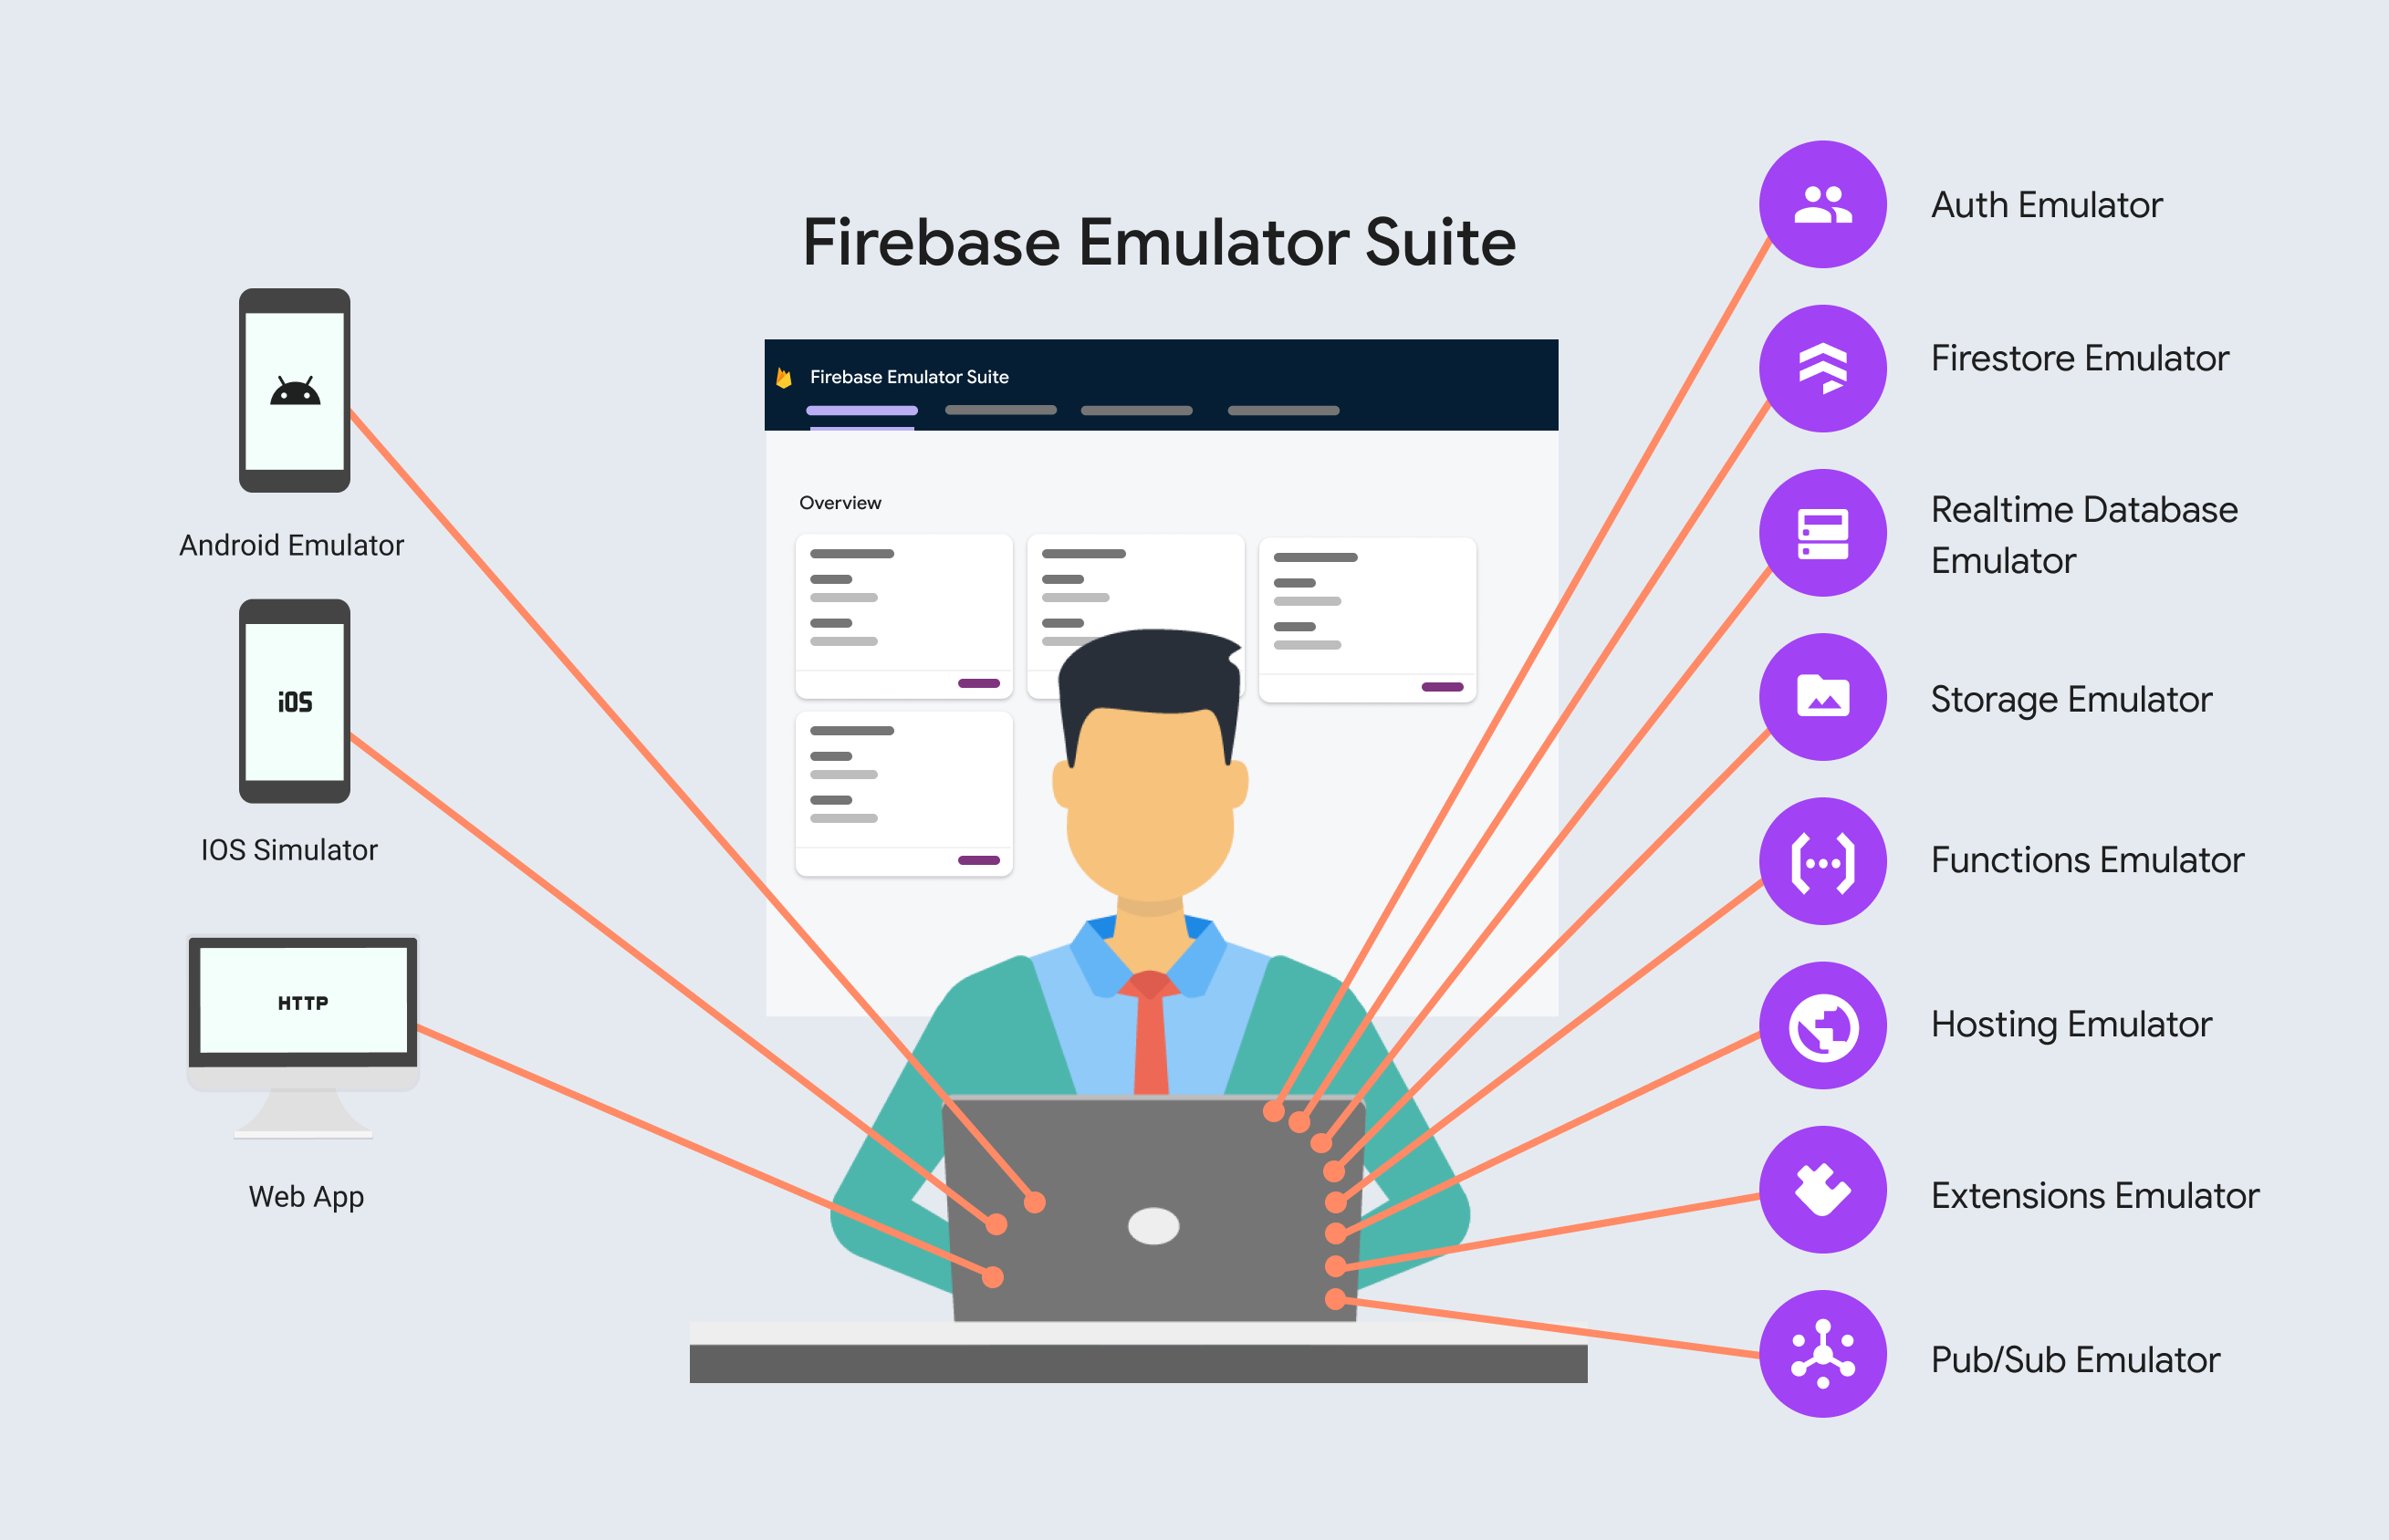 आपके डेवलपमेंट वर्कफ़्लो में Firebase लोकल एम्युलेटर सुइट जोड़ा जा रहा है.